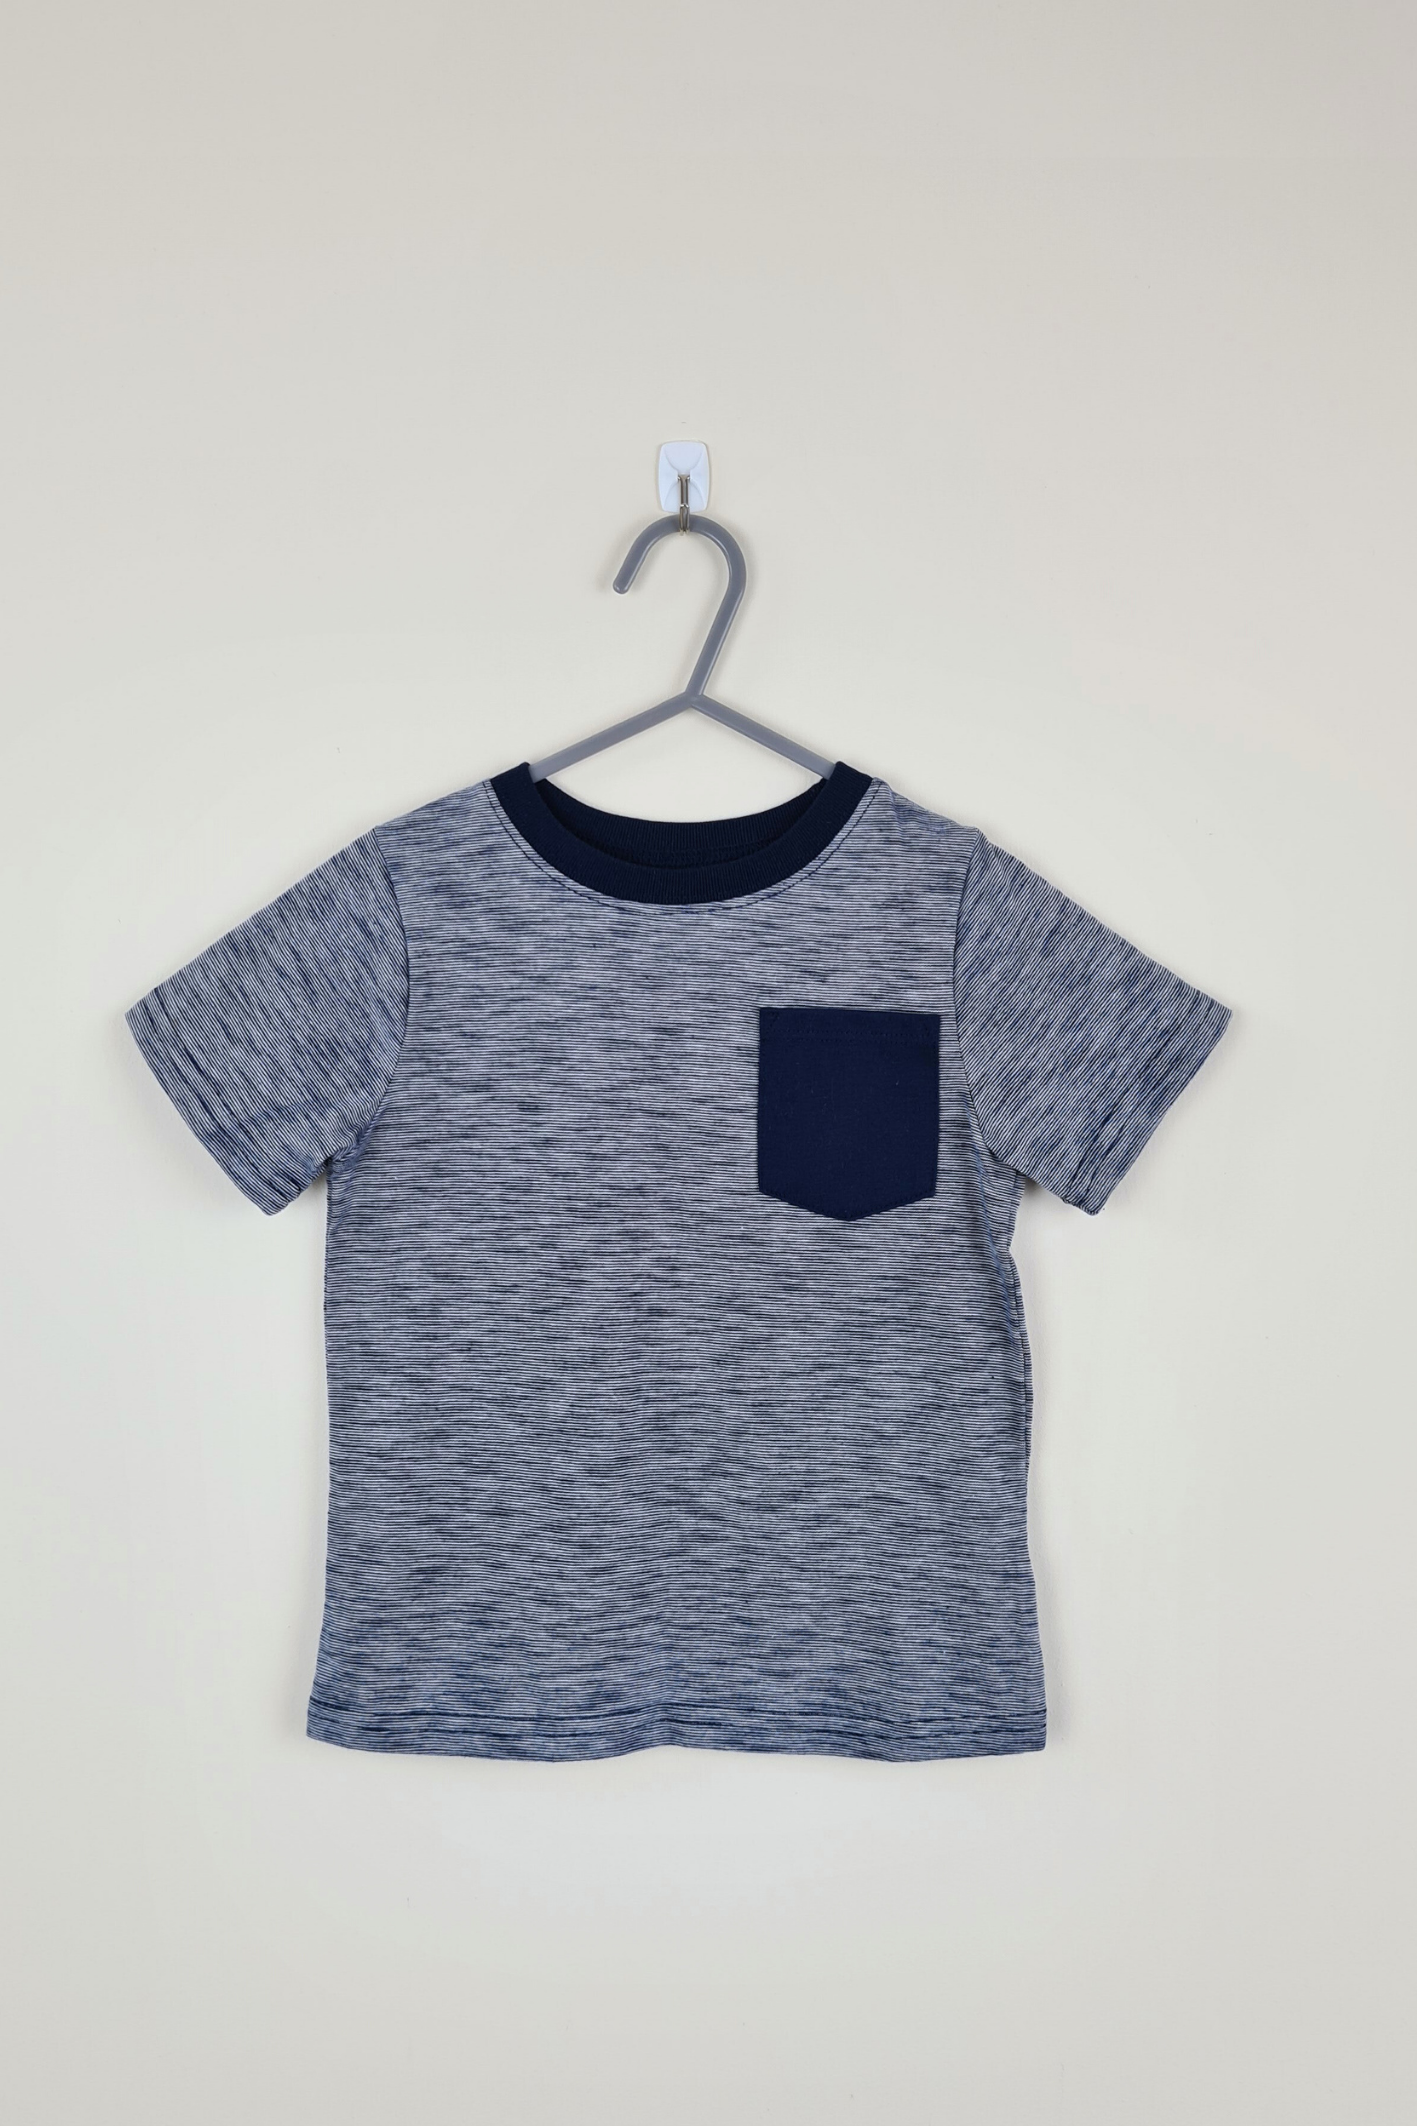 3 ans - T-shirt basique bleu (Garanimals)